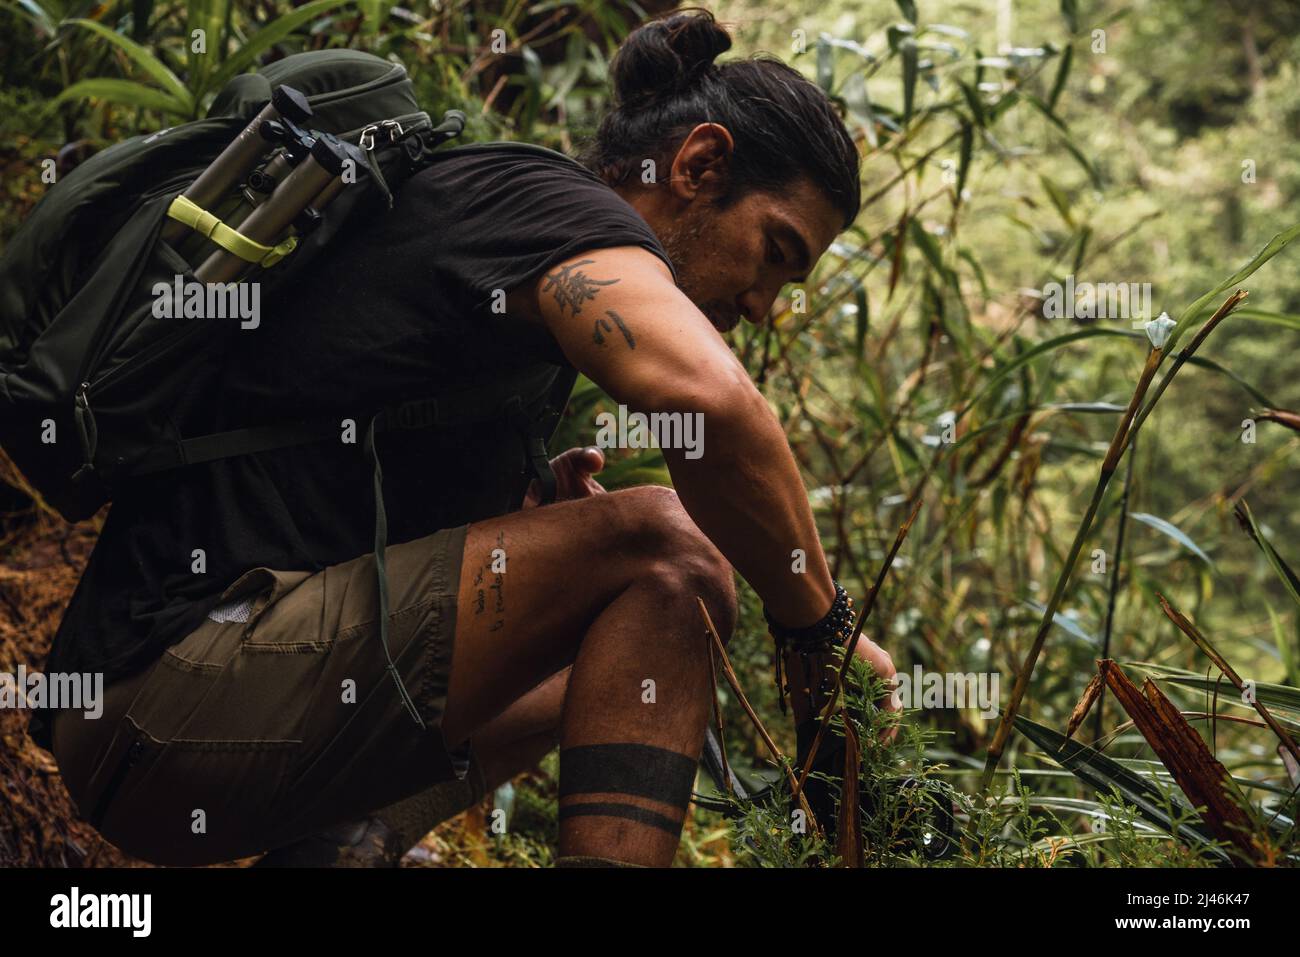 Homme grimpant dans la nature avec son équipement de photographie Banque D'Images